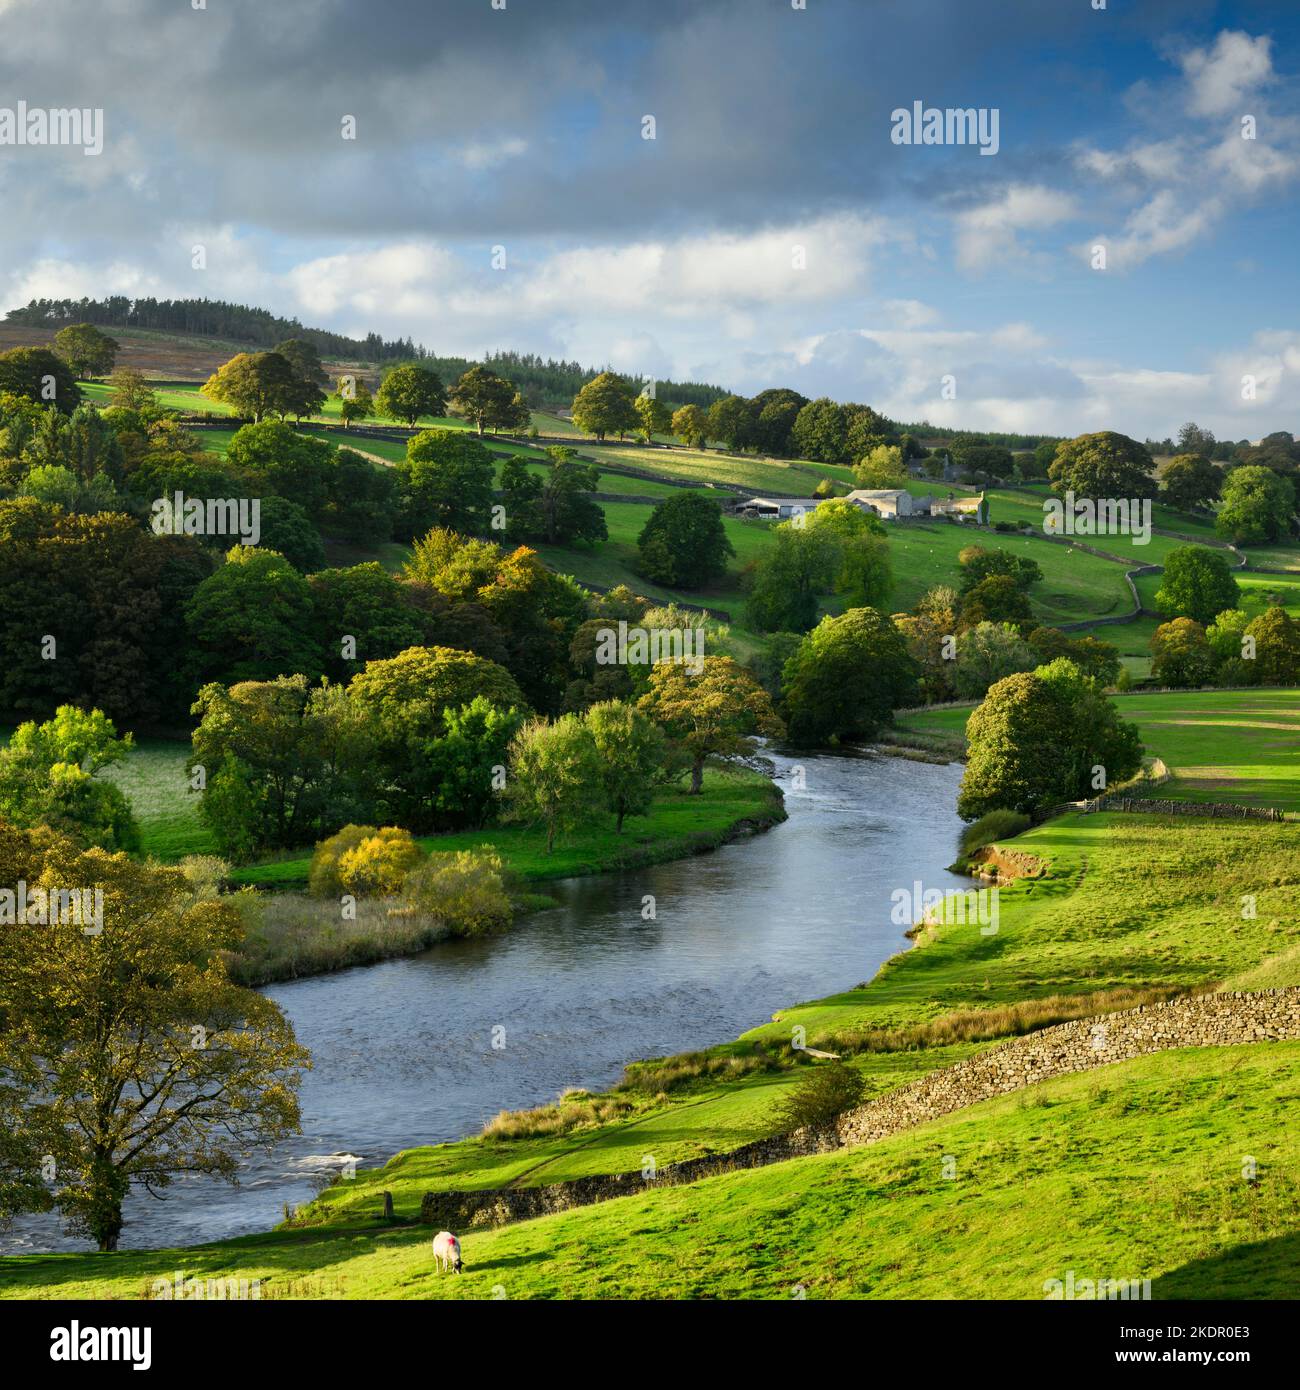 Paysage rural pittoresque de la vallée (eau de la rivière Wharfe, bâtiments agricoles, arbres au bord de la rivière, mur de pierre, soleil d'automne en soirée) - Yorkshire Dales, Angleterre, Royaume-Uni. Banque D'Images